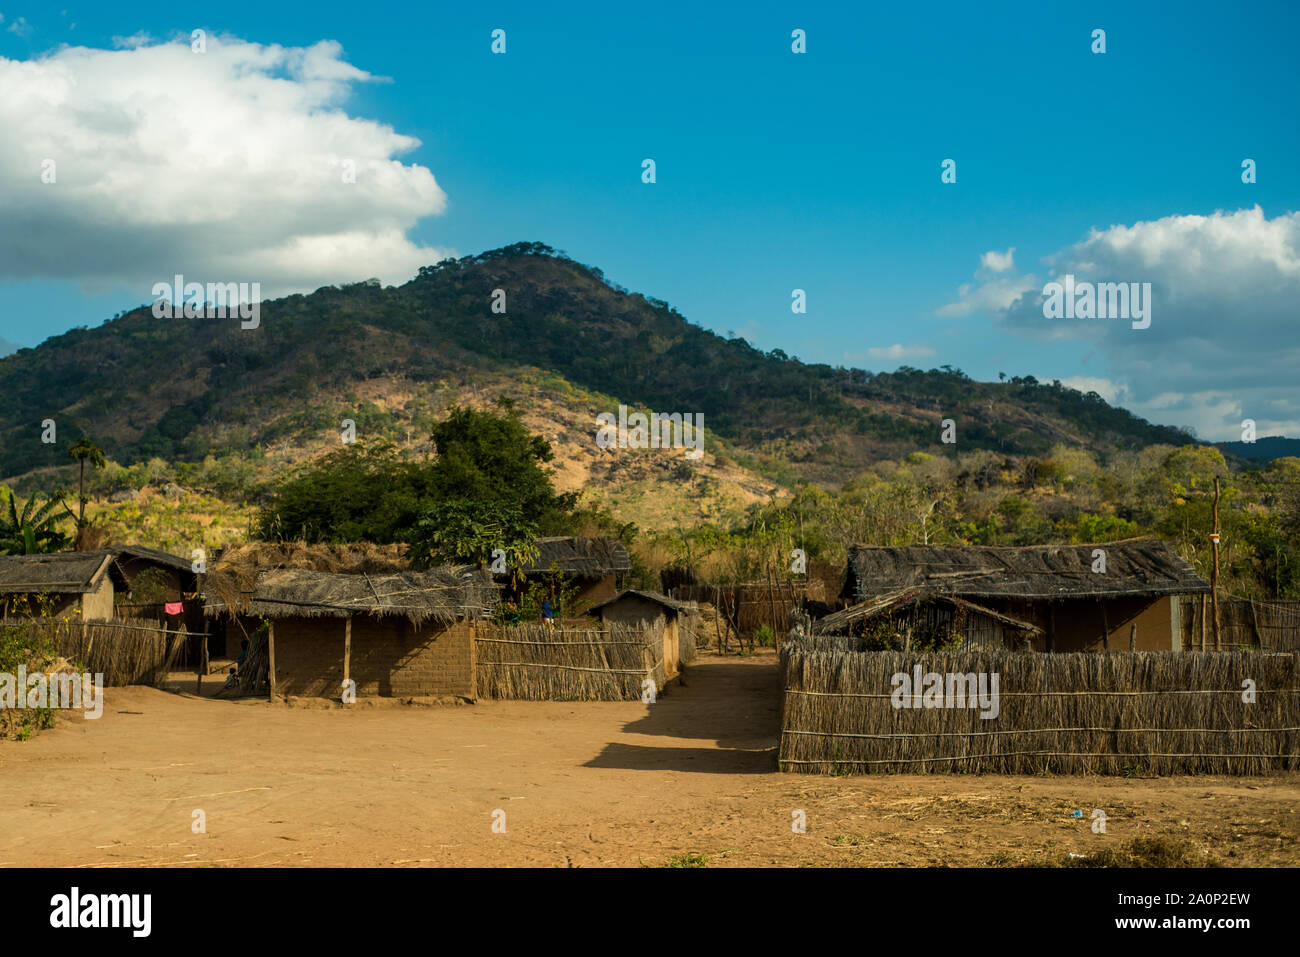 La province de Nampula / Mozambique - 6 juillet 2019 : une route rurale village de huttes de chaume, avec une colline verte à l'arrière-plan sur une journée ensoleillée Banque D'Images